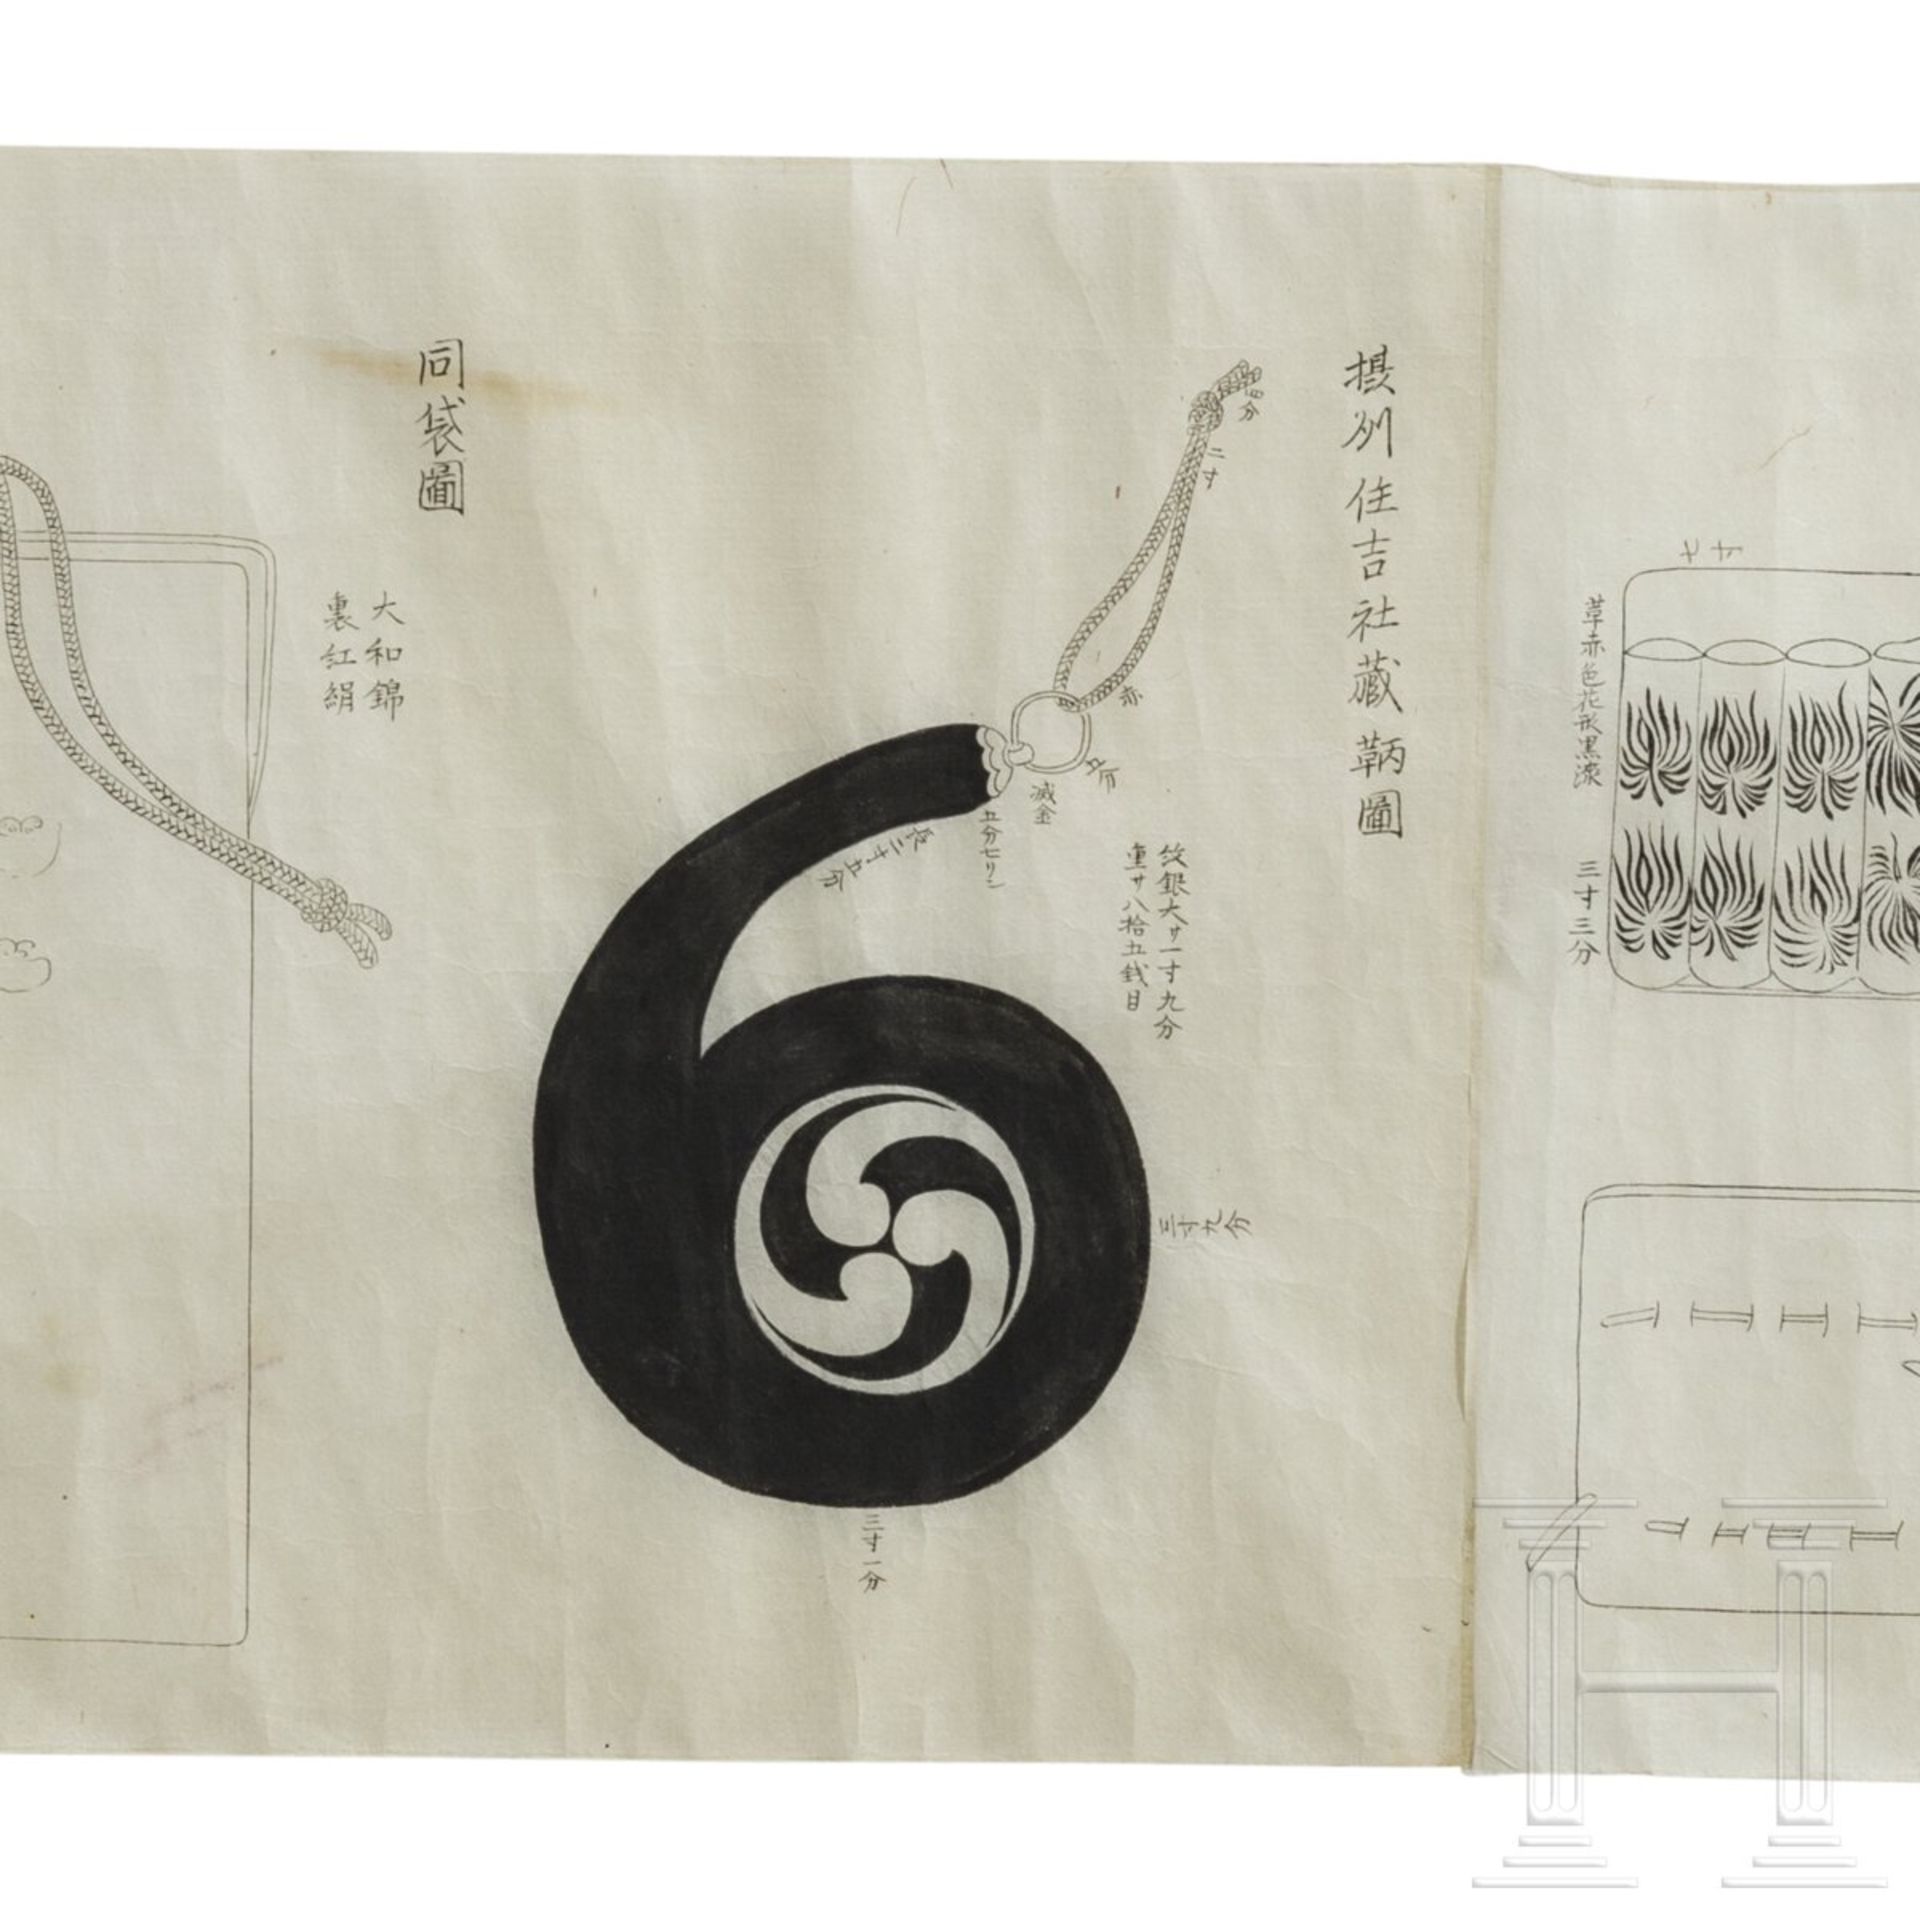 Bildrolle zum Thema Bogenschießen, Japan, Ende Edo-Periode - Image 9 of 9